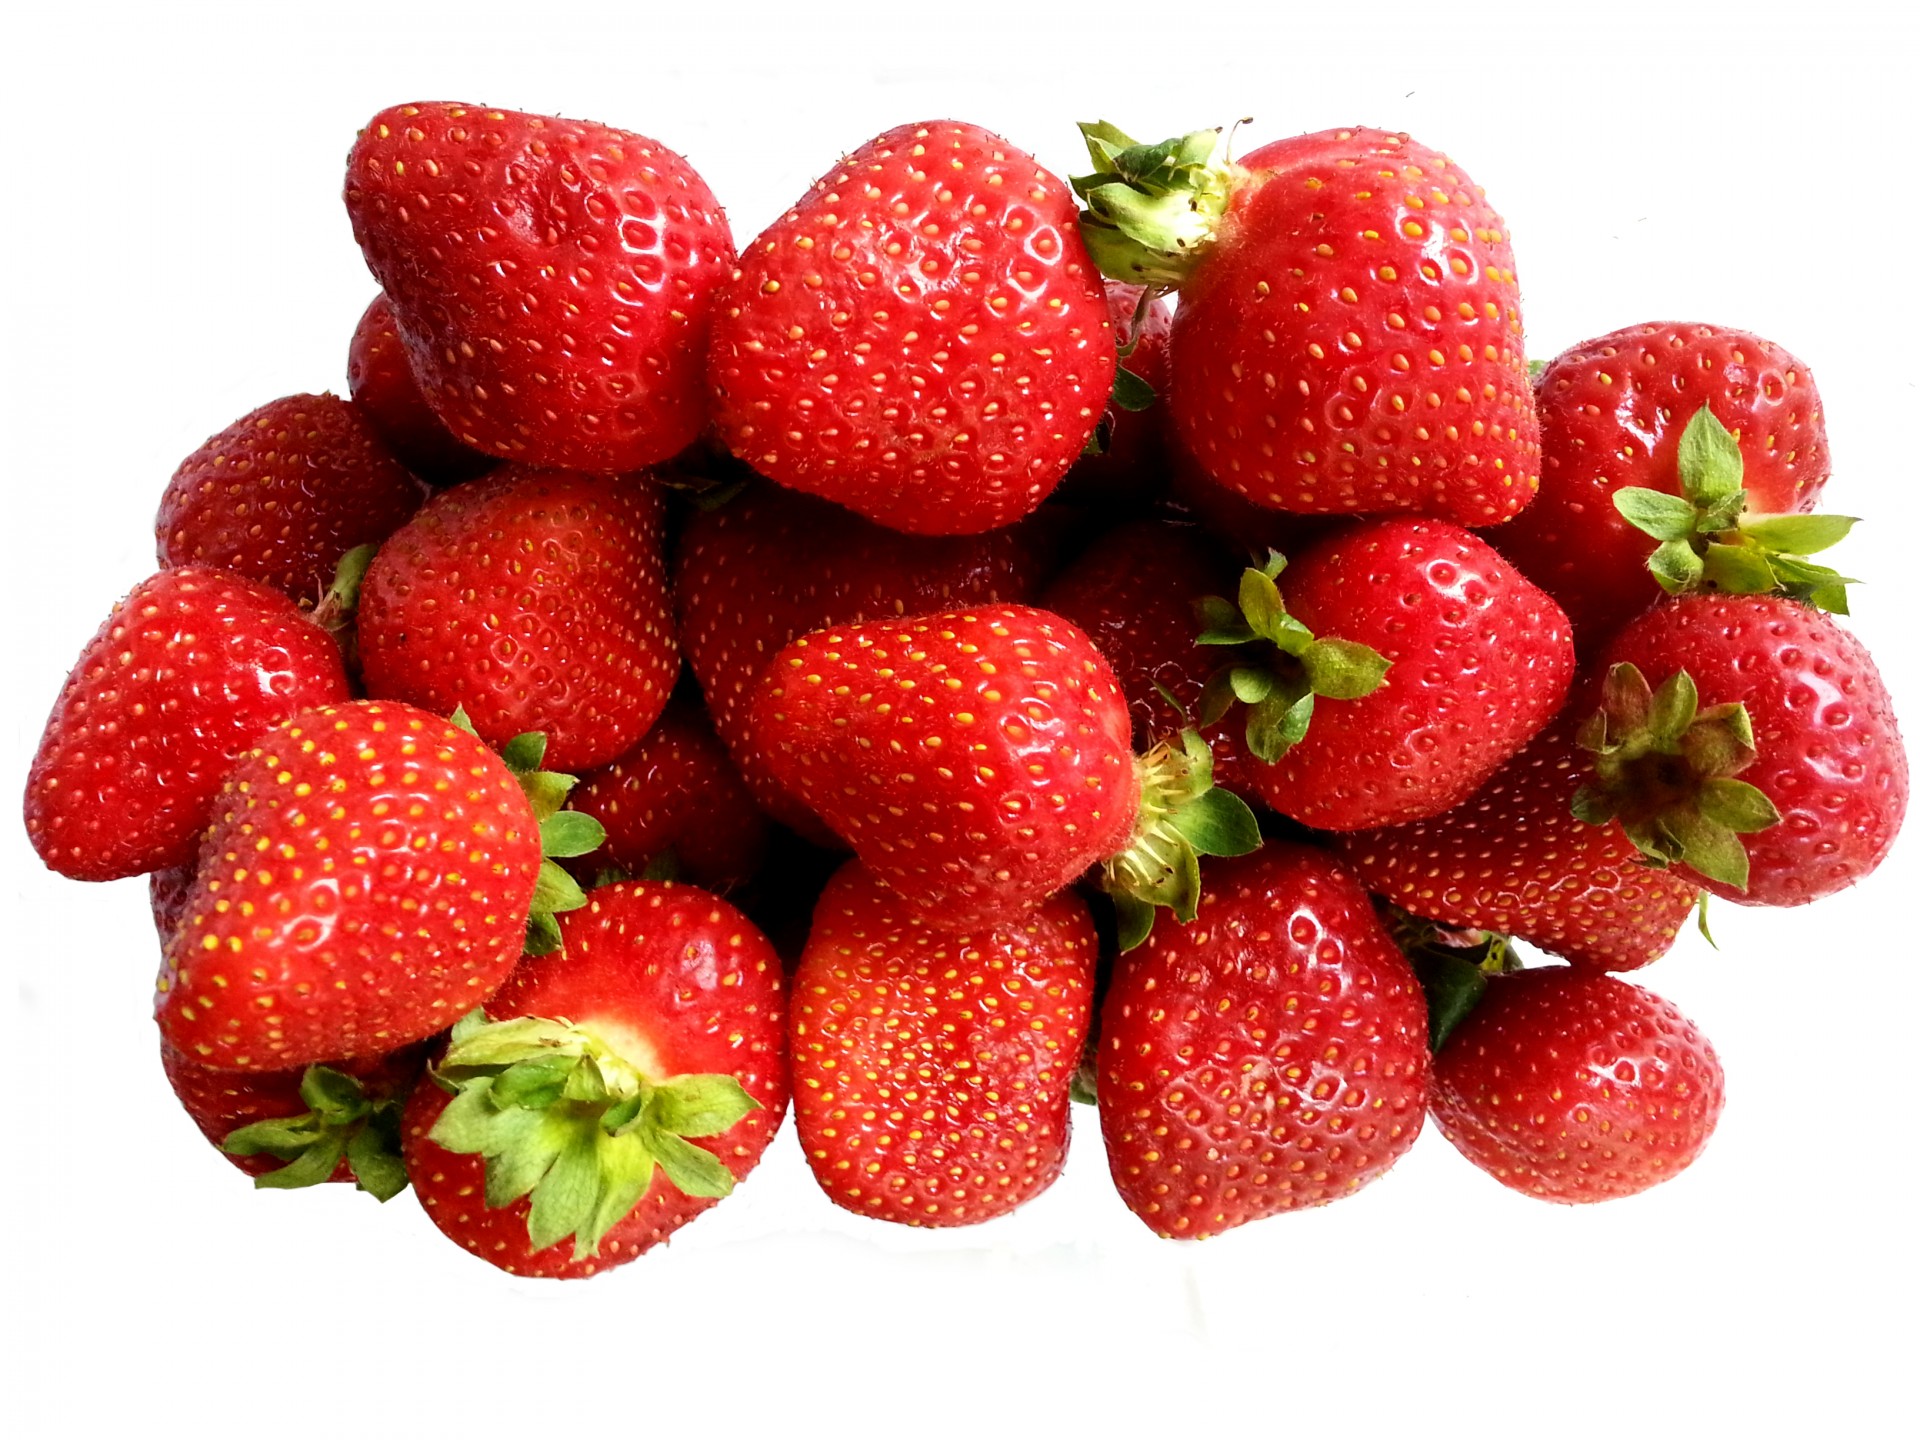 strawberry strawberries berry free photo